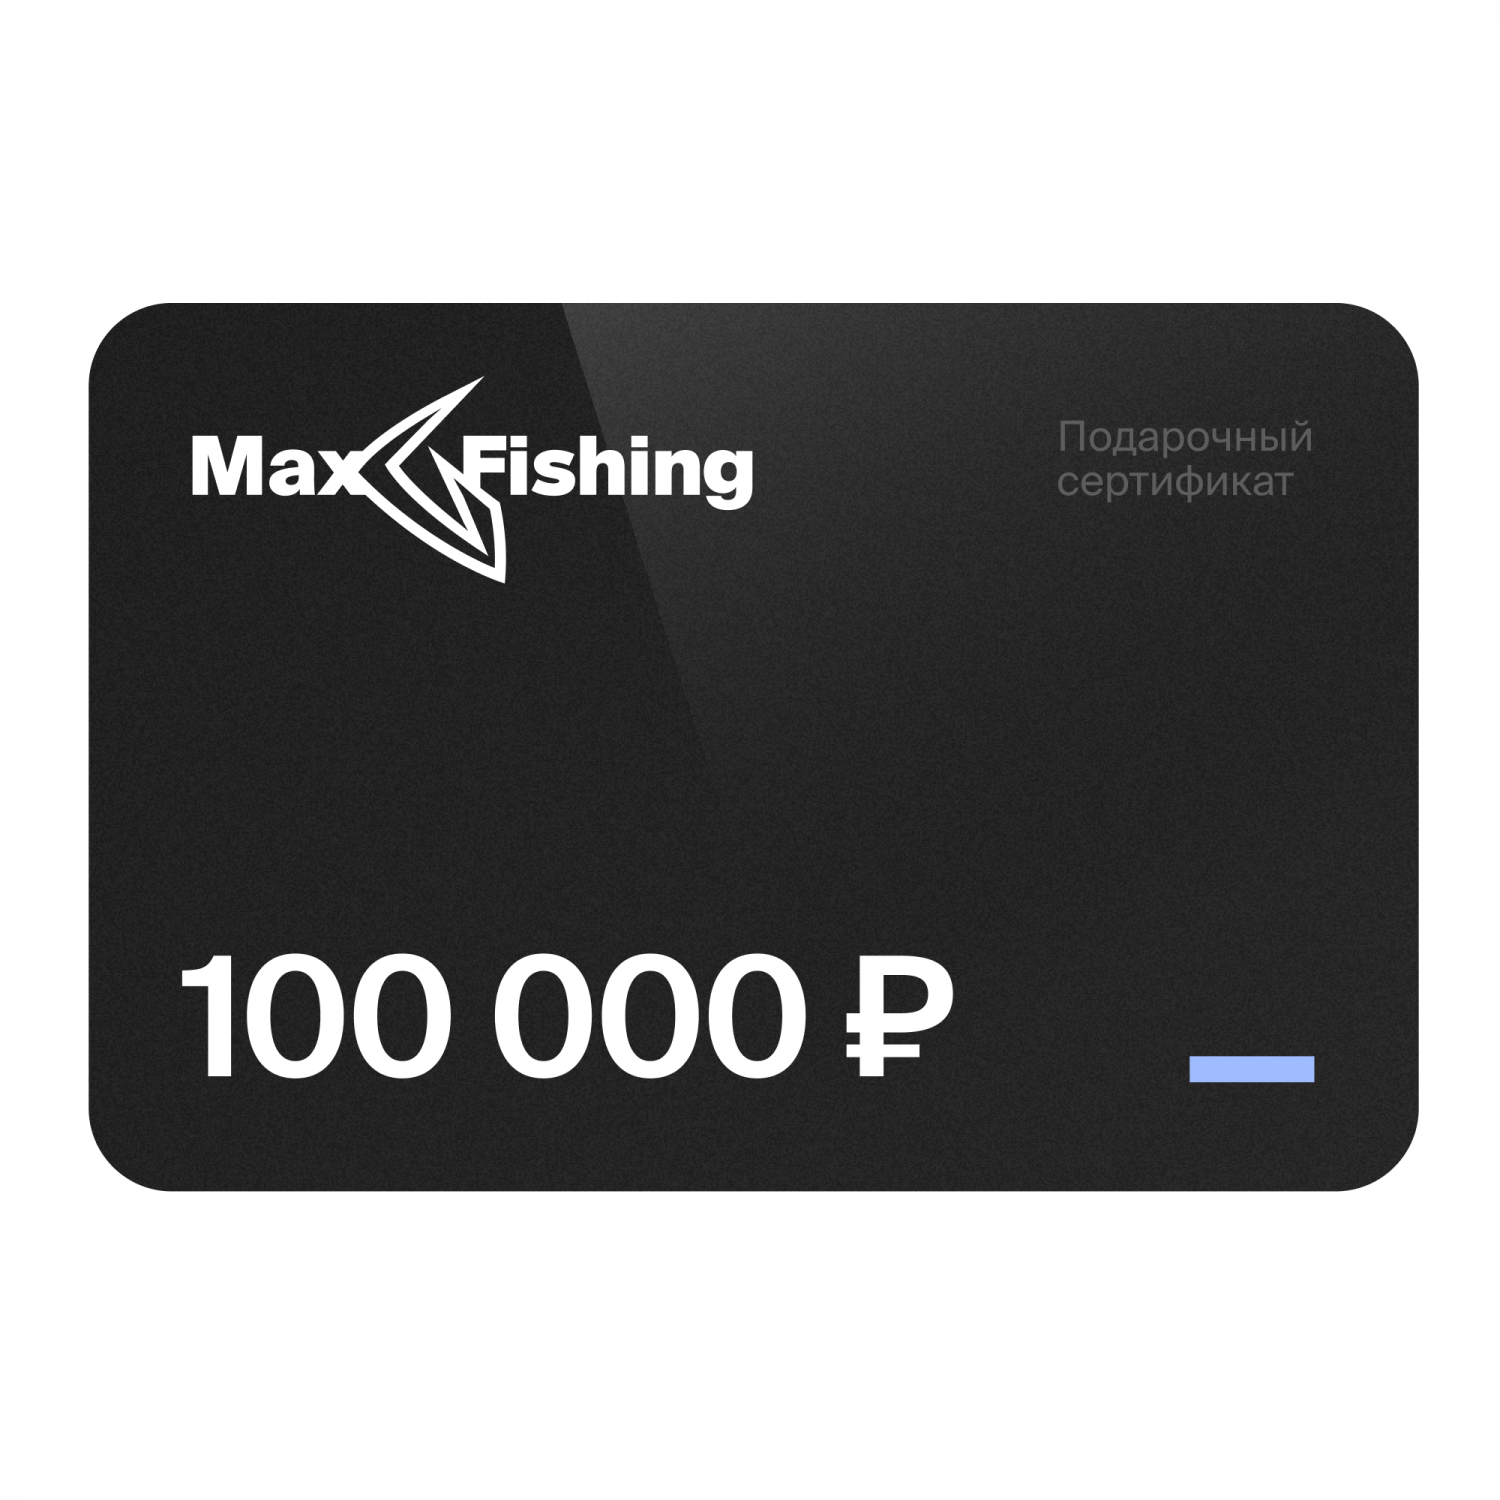 Подарочный сертификат MaxFishing 100 000 ₽ подарочный сертификат номиналом 10000 рублей